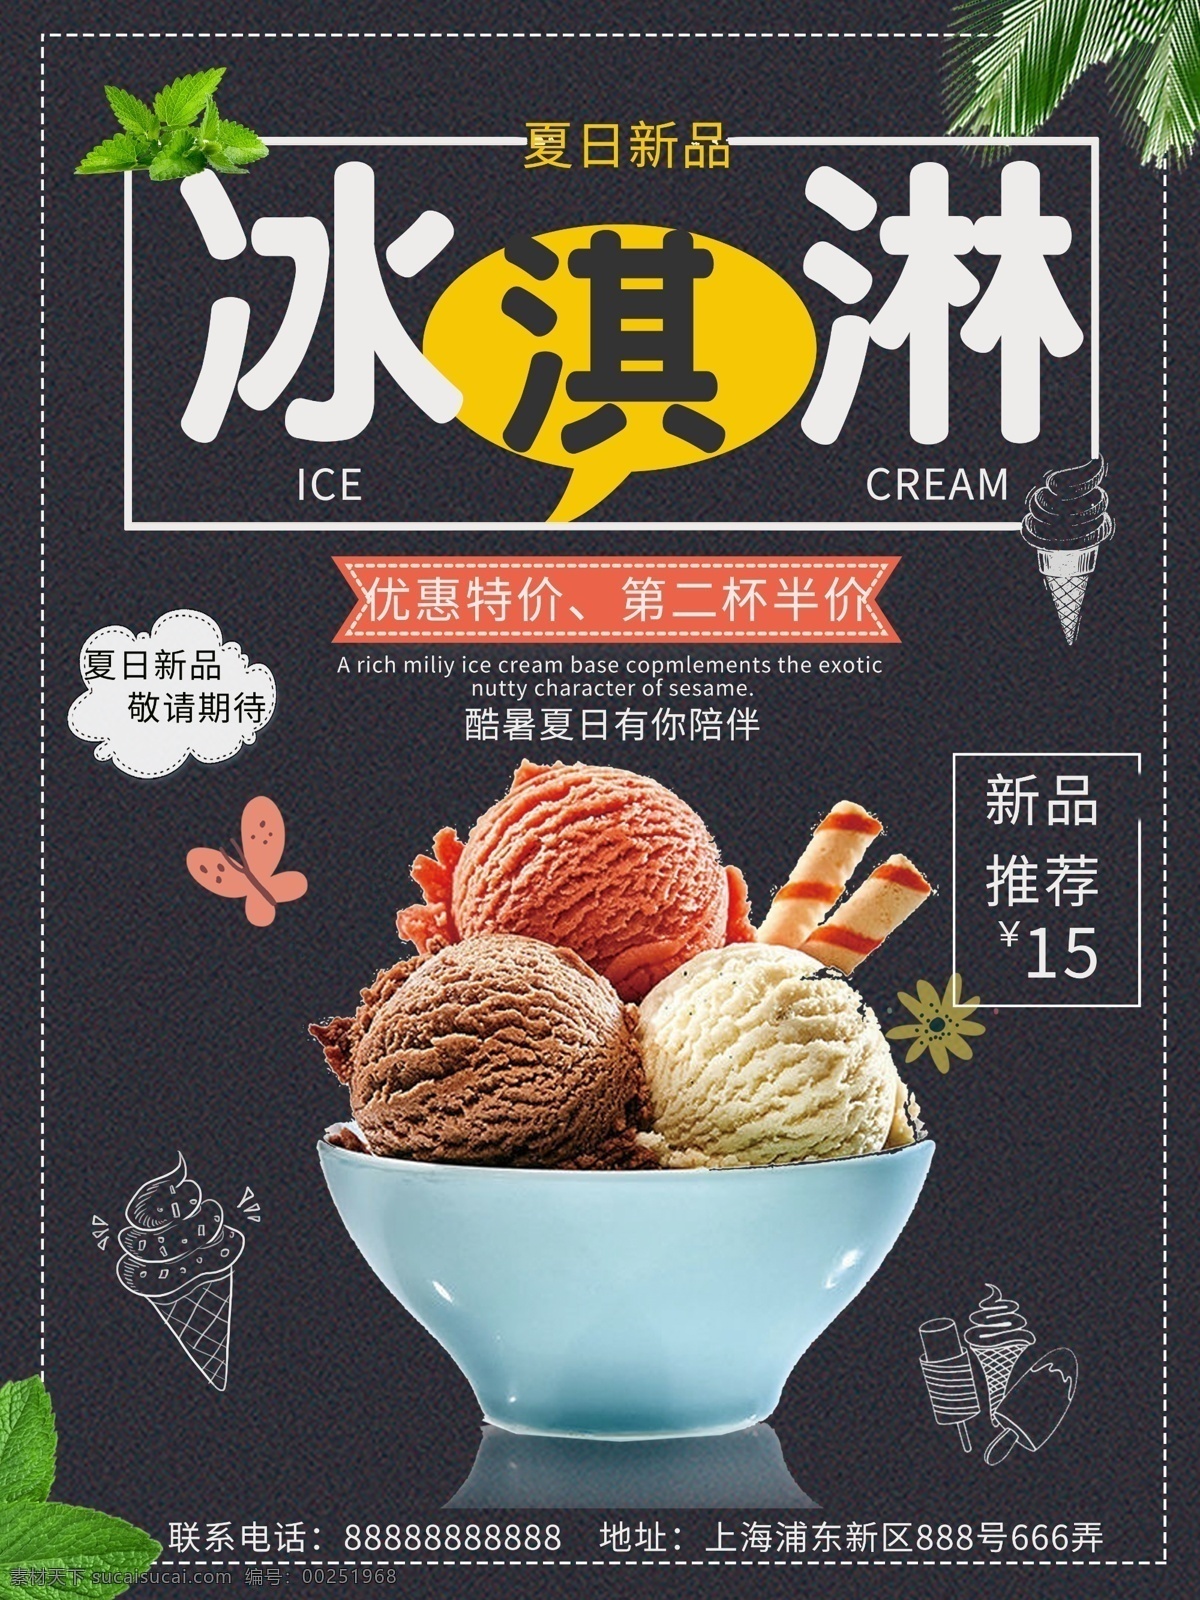 简约 大方 冰激凌 海报 冰淇淋海报 美食海报 冰淇淋 新店开张